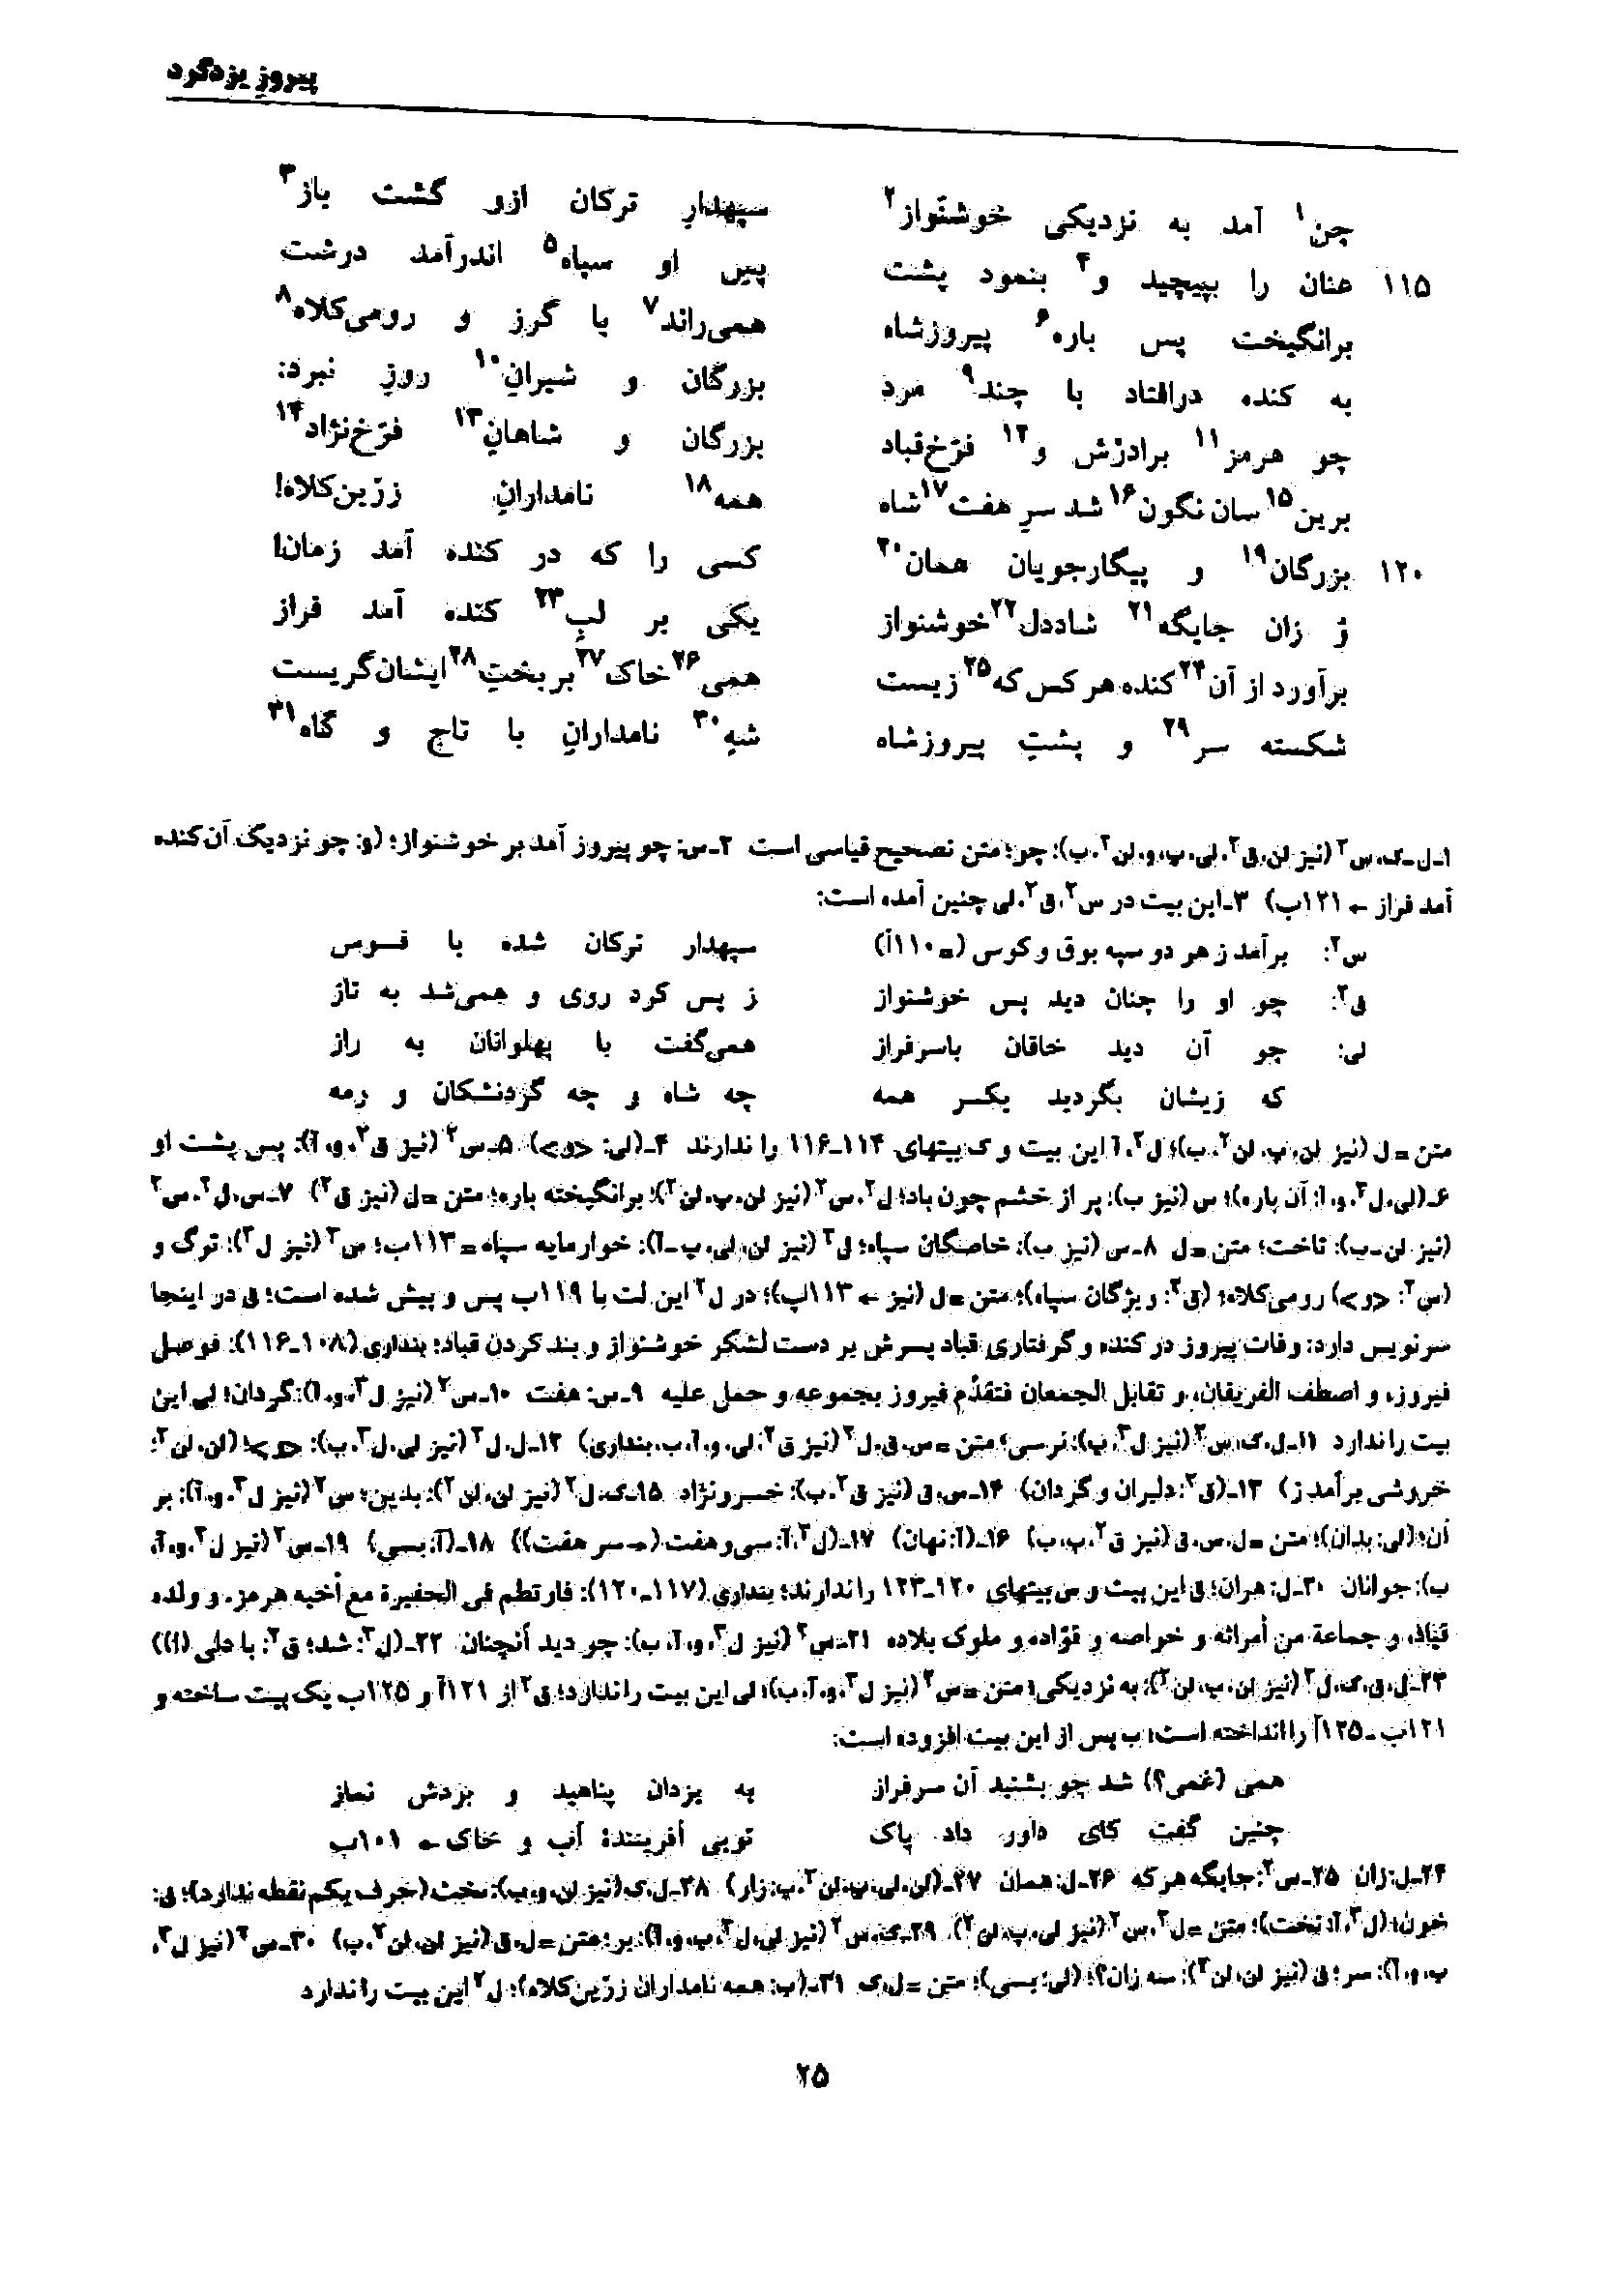 vol. 7, p. 25